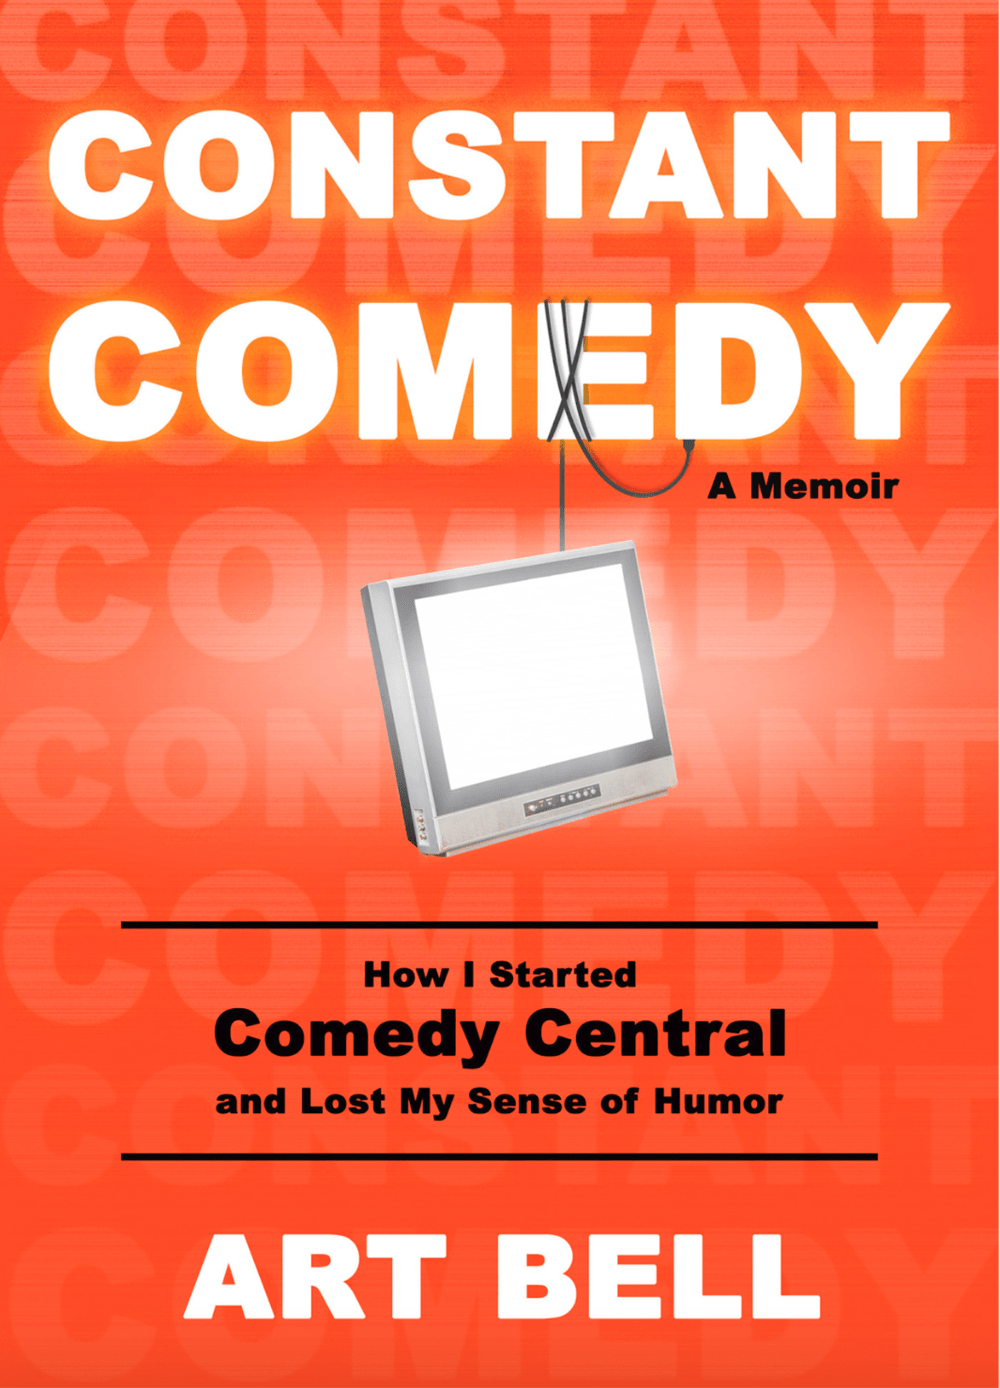 Constant Comedy: A Memoir by Art Bell